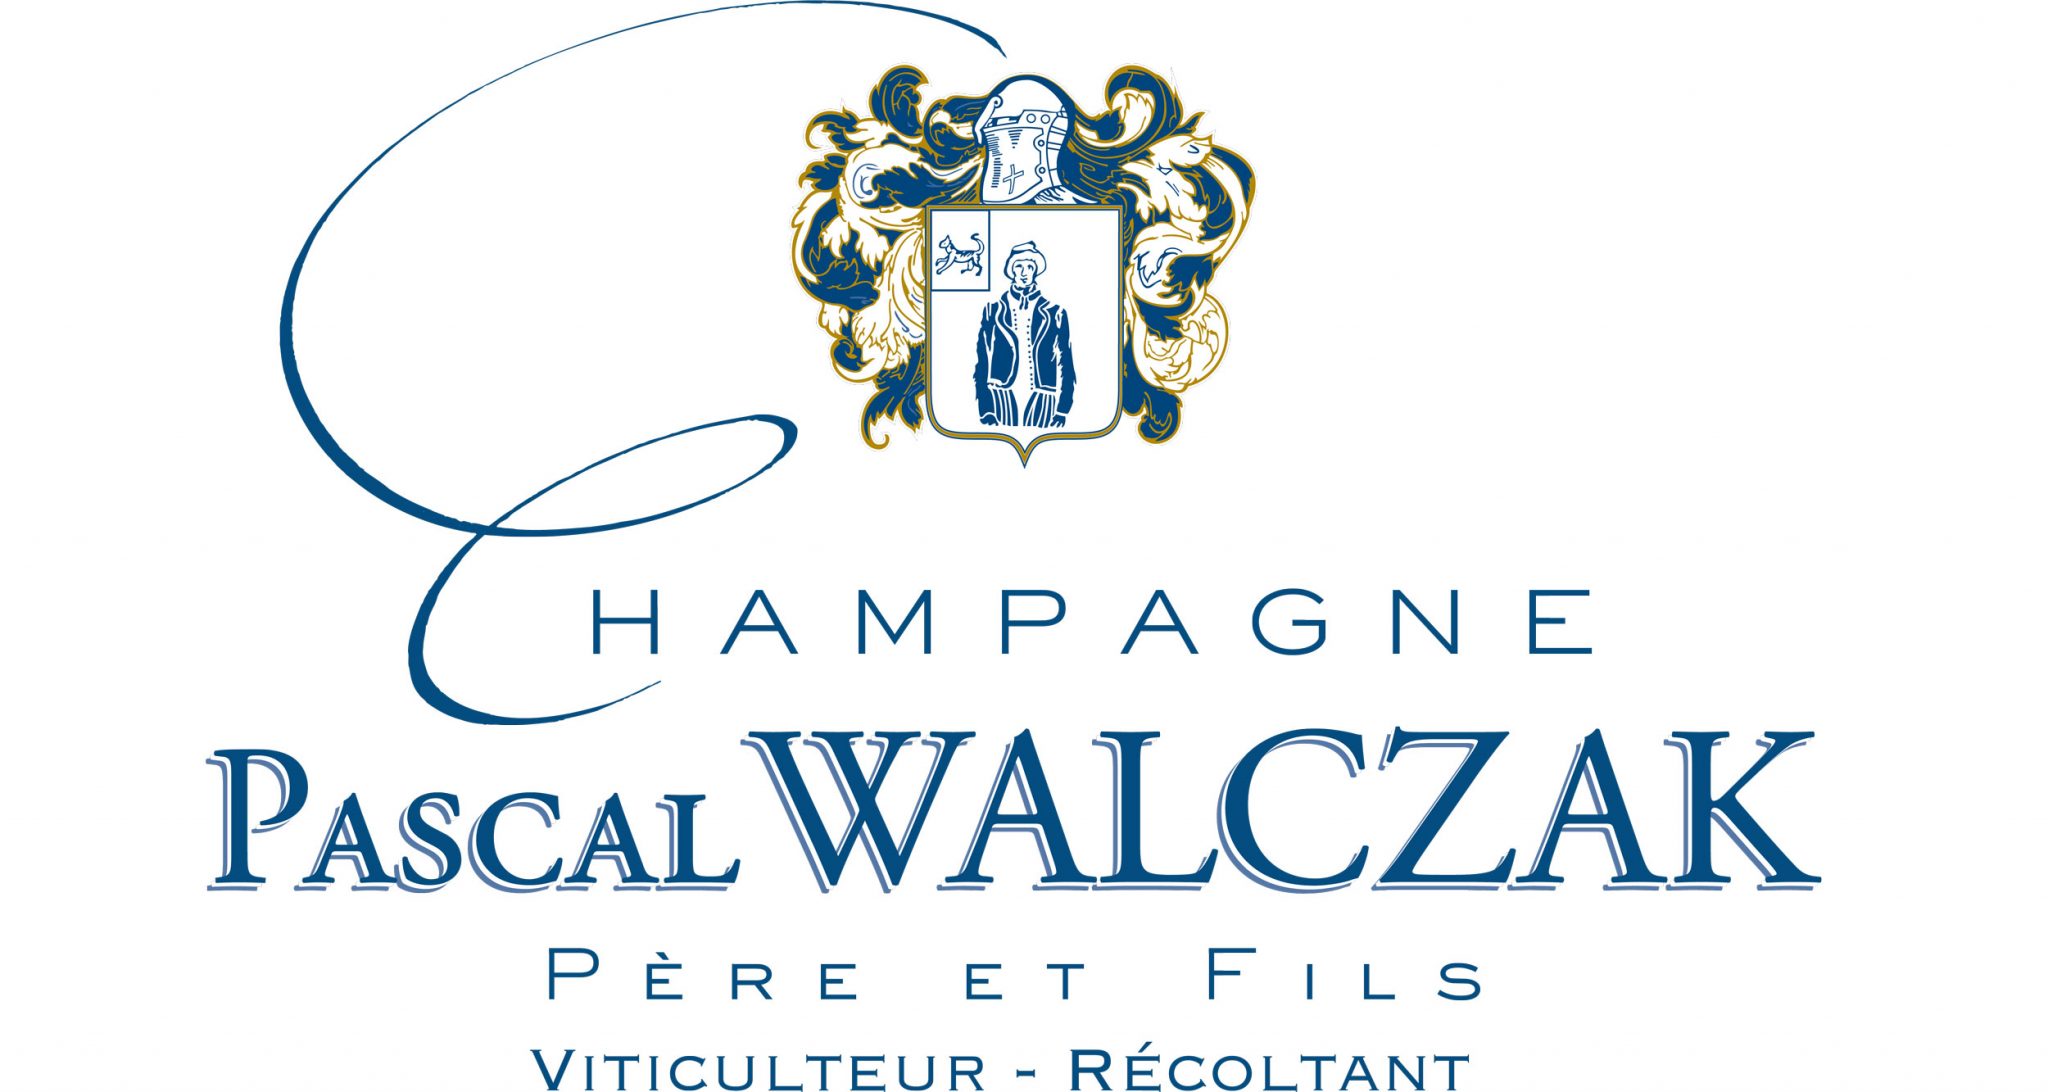 Champagne Pascal Walczak